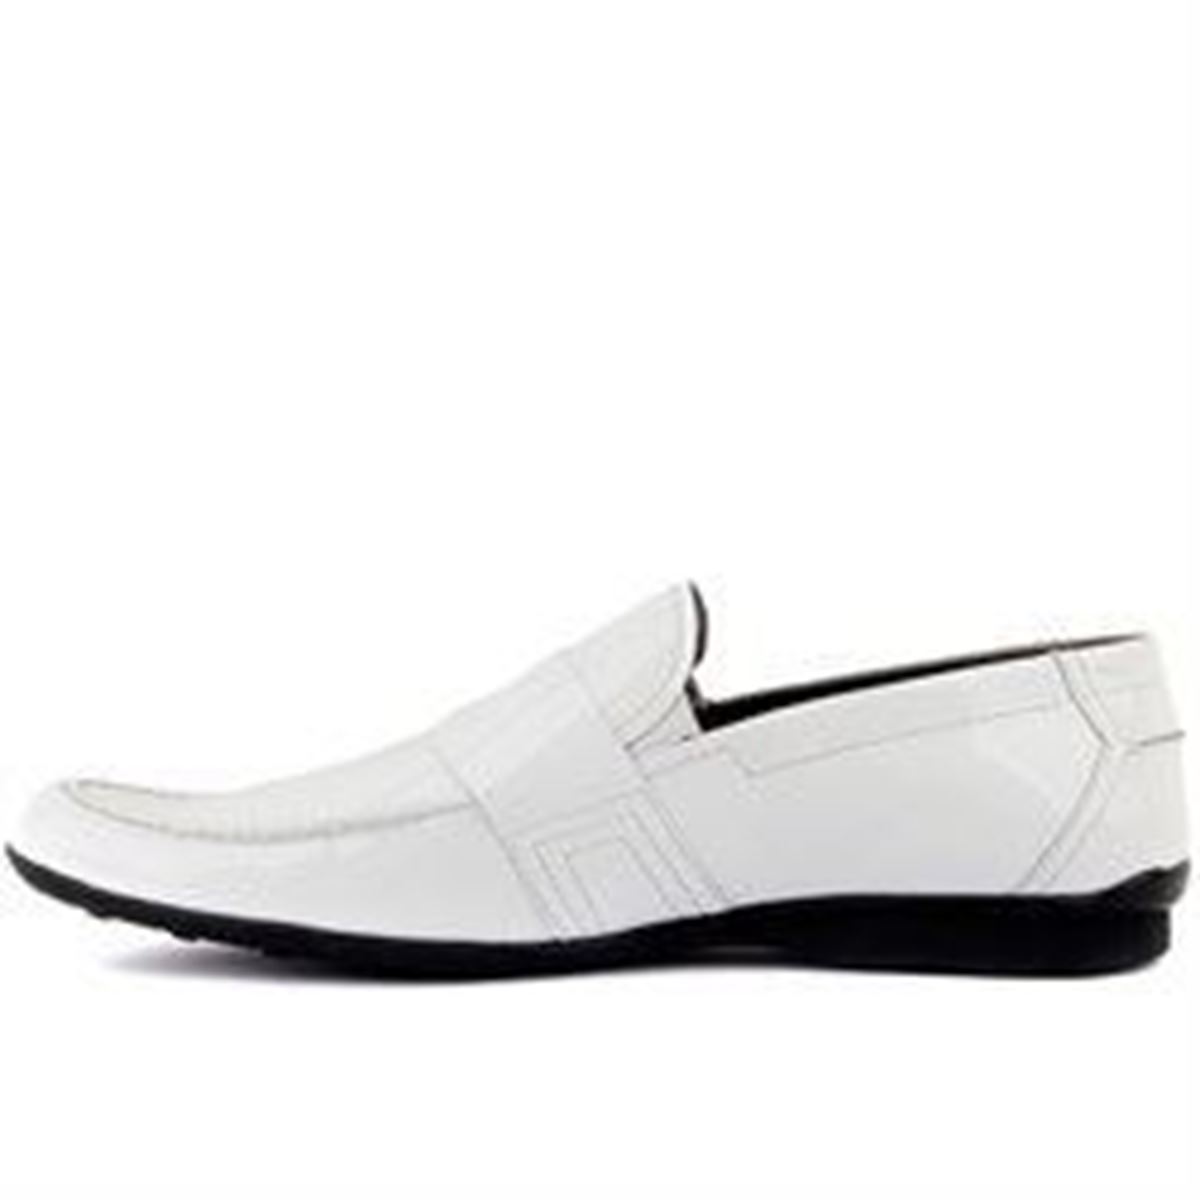 Sail Lakers - Beyaz Rugan Erkek Günlük Ayakkabı resmi